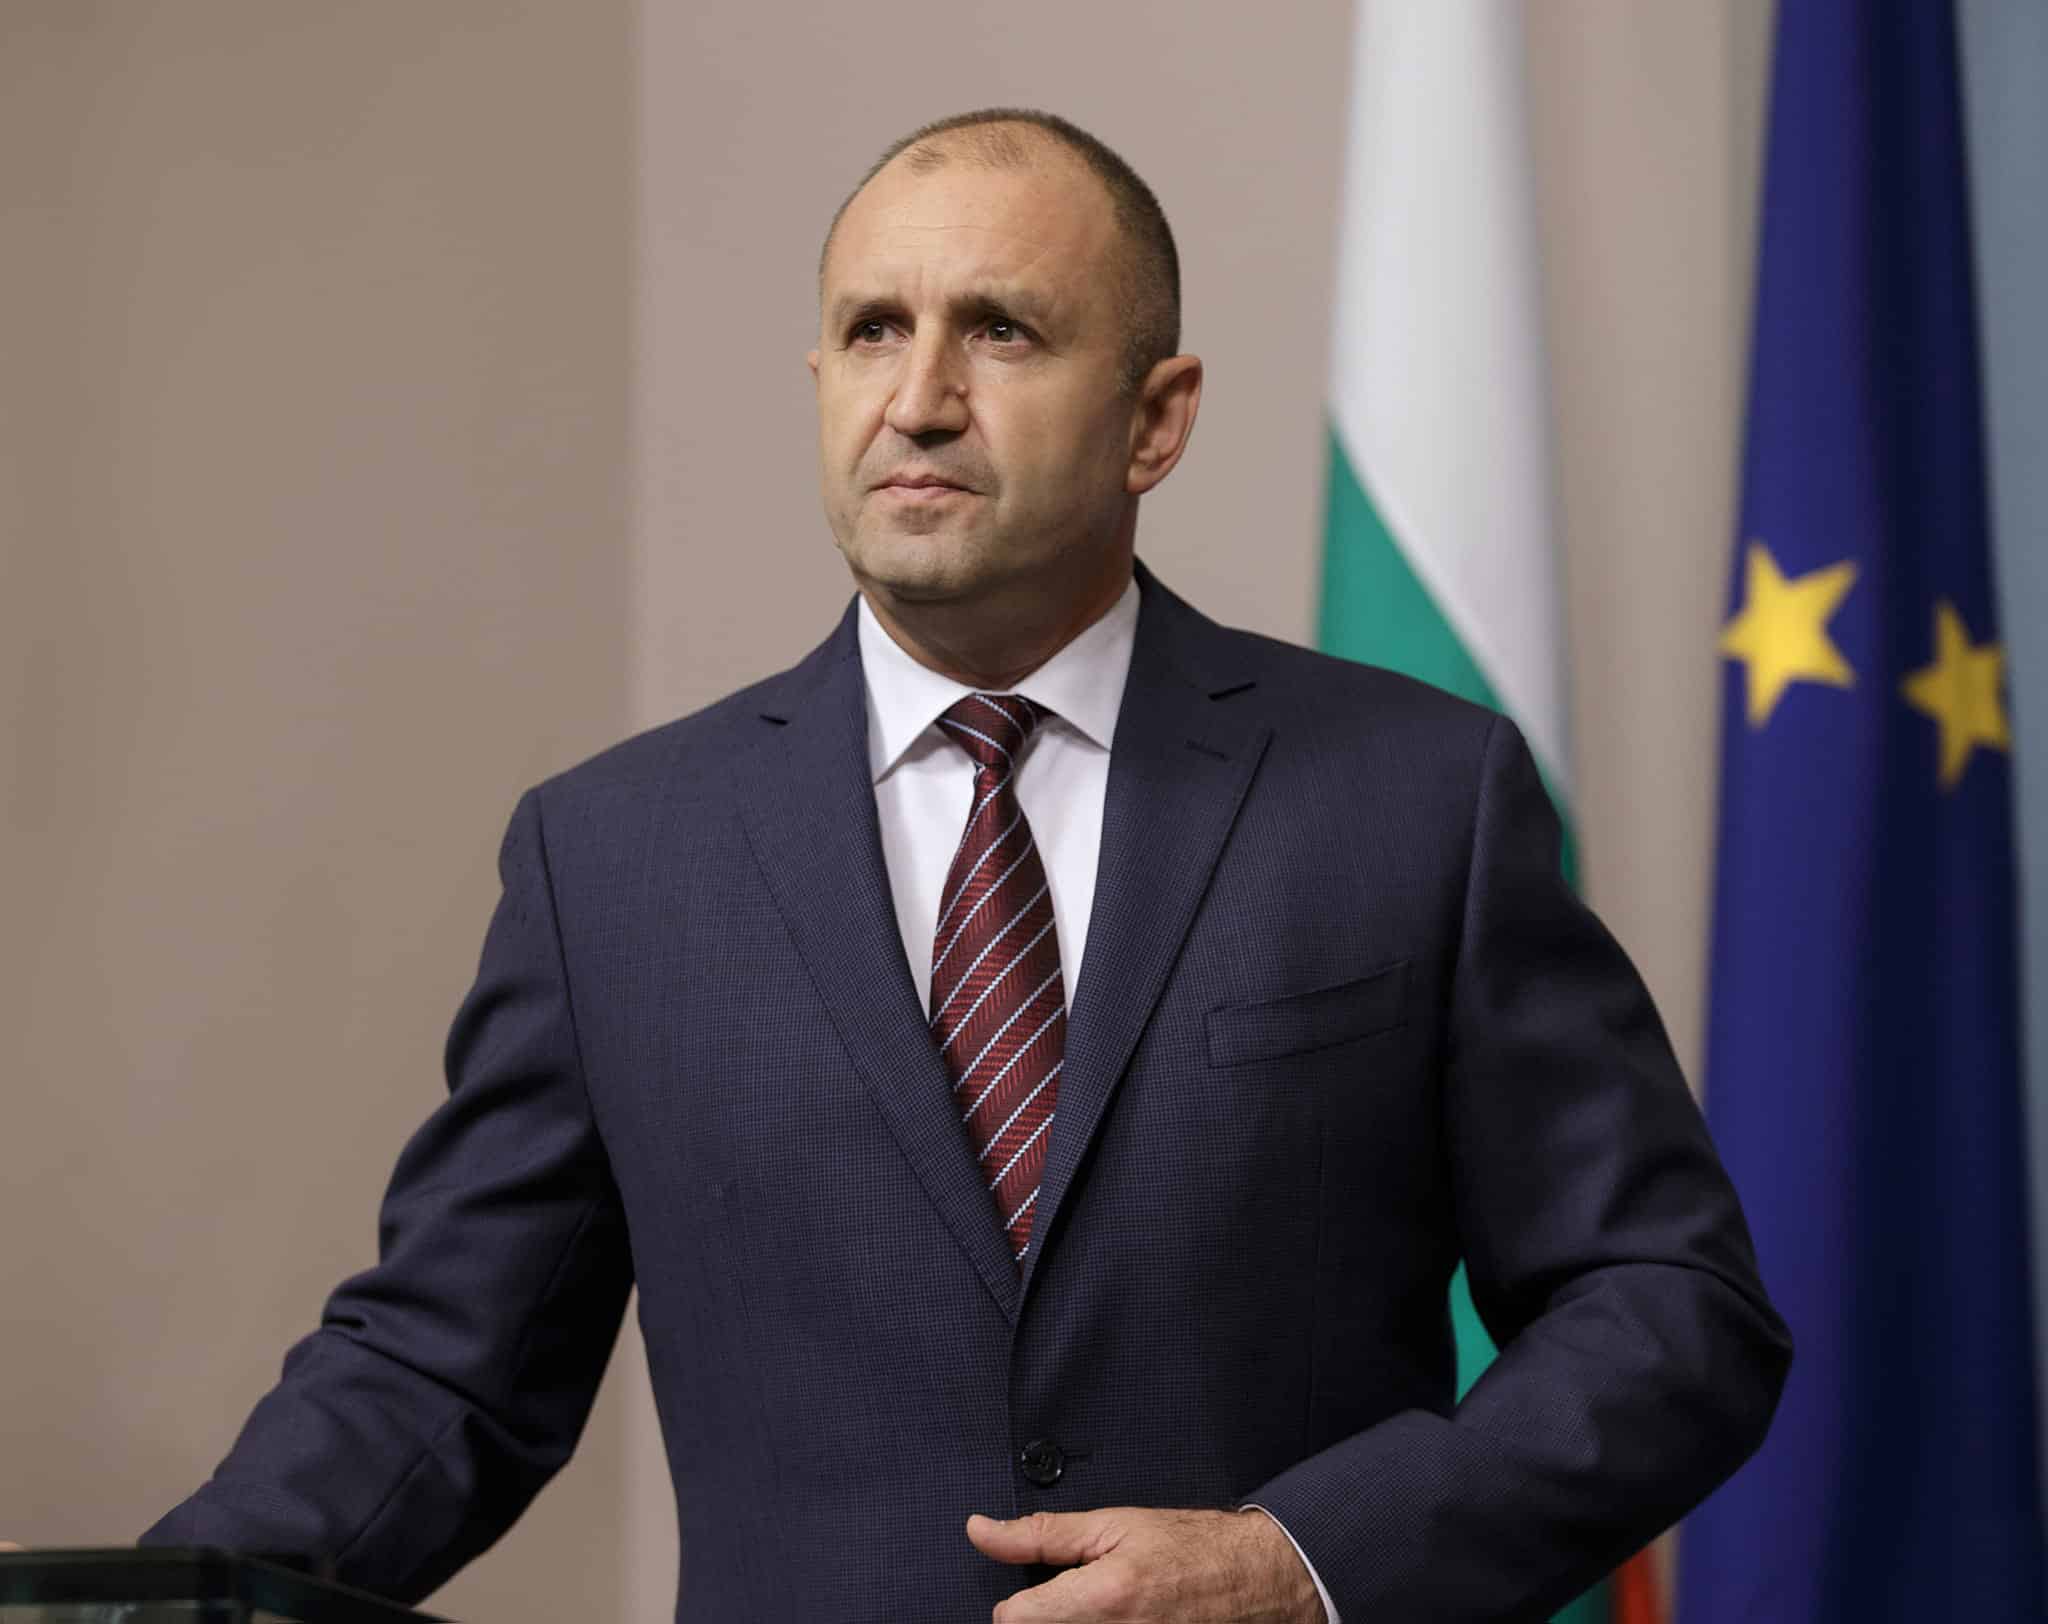 Република България не приема изявления и поведение които противоречат както